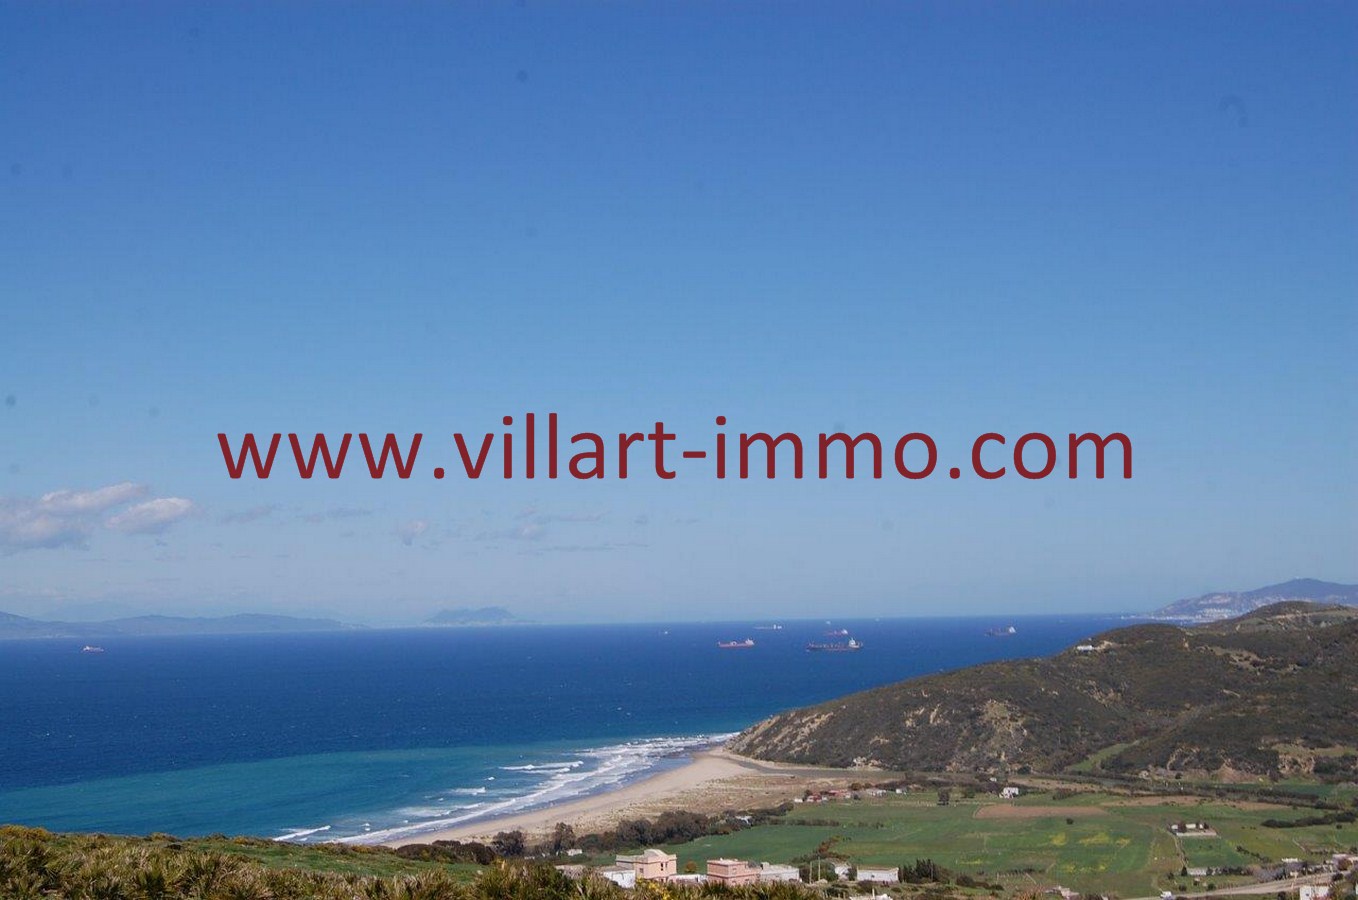 5-Vente-Terrain-Tanger-Tarifa-VT18-Villart Immo